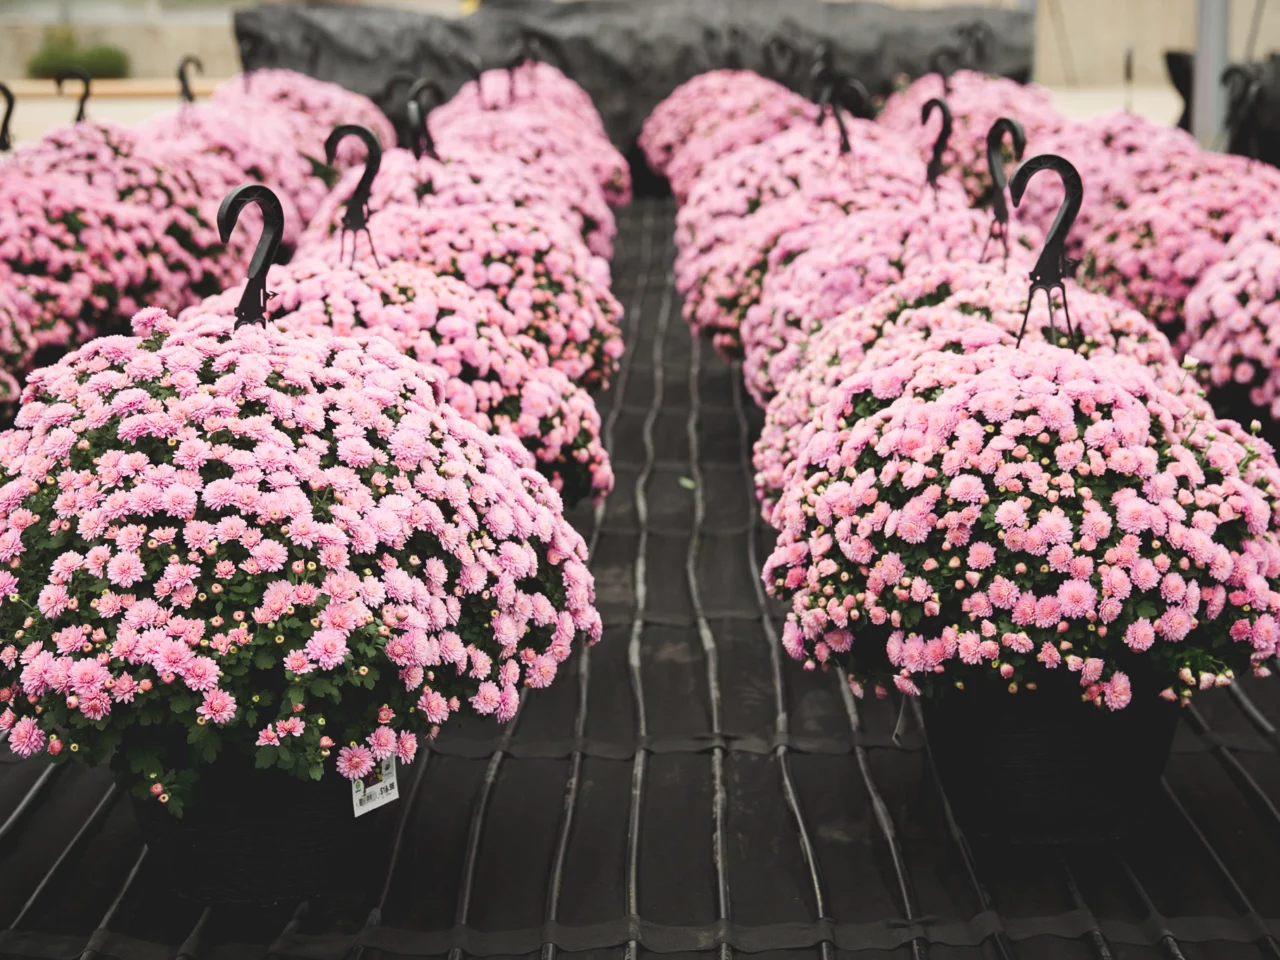 pink flowers in plastic hanger pots